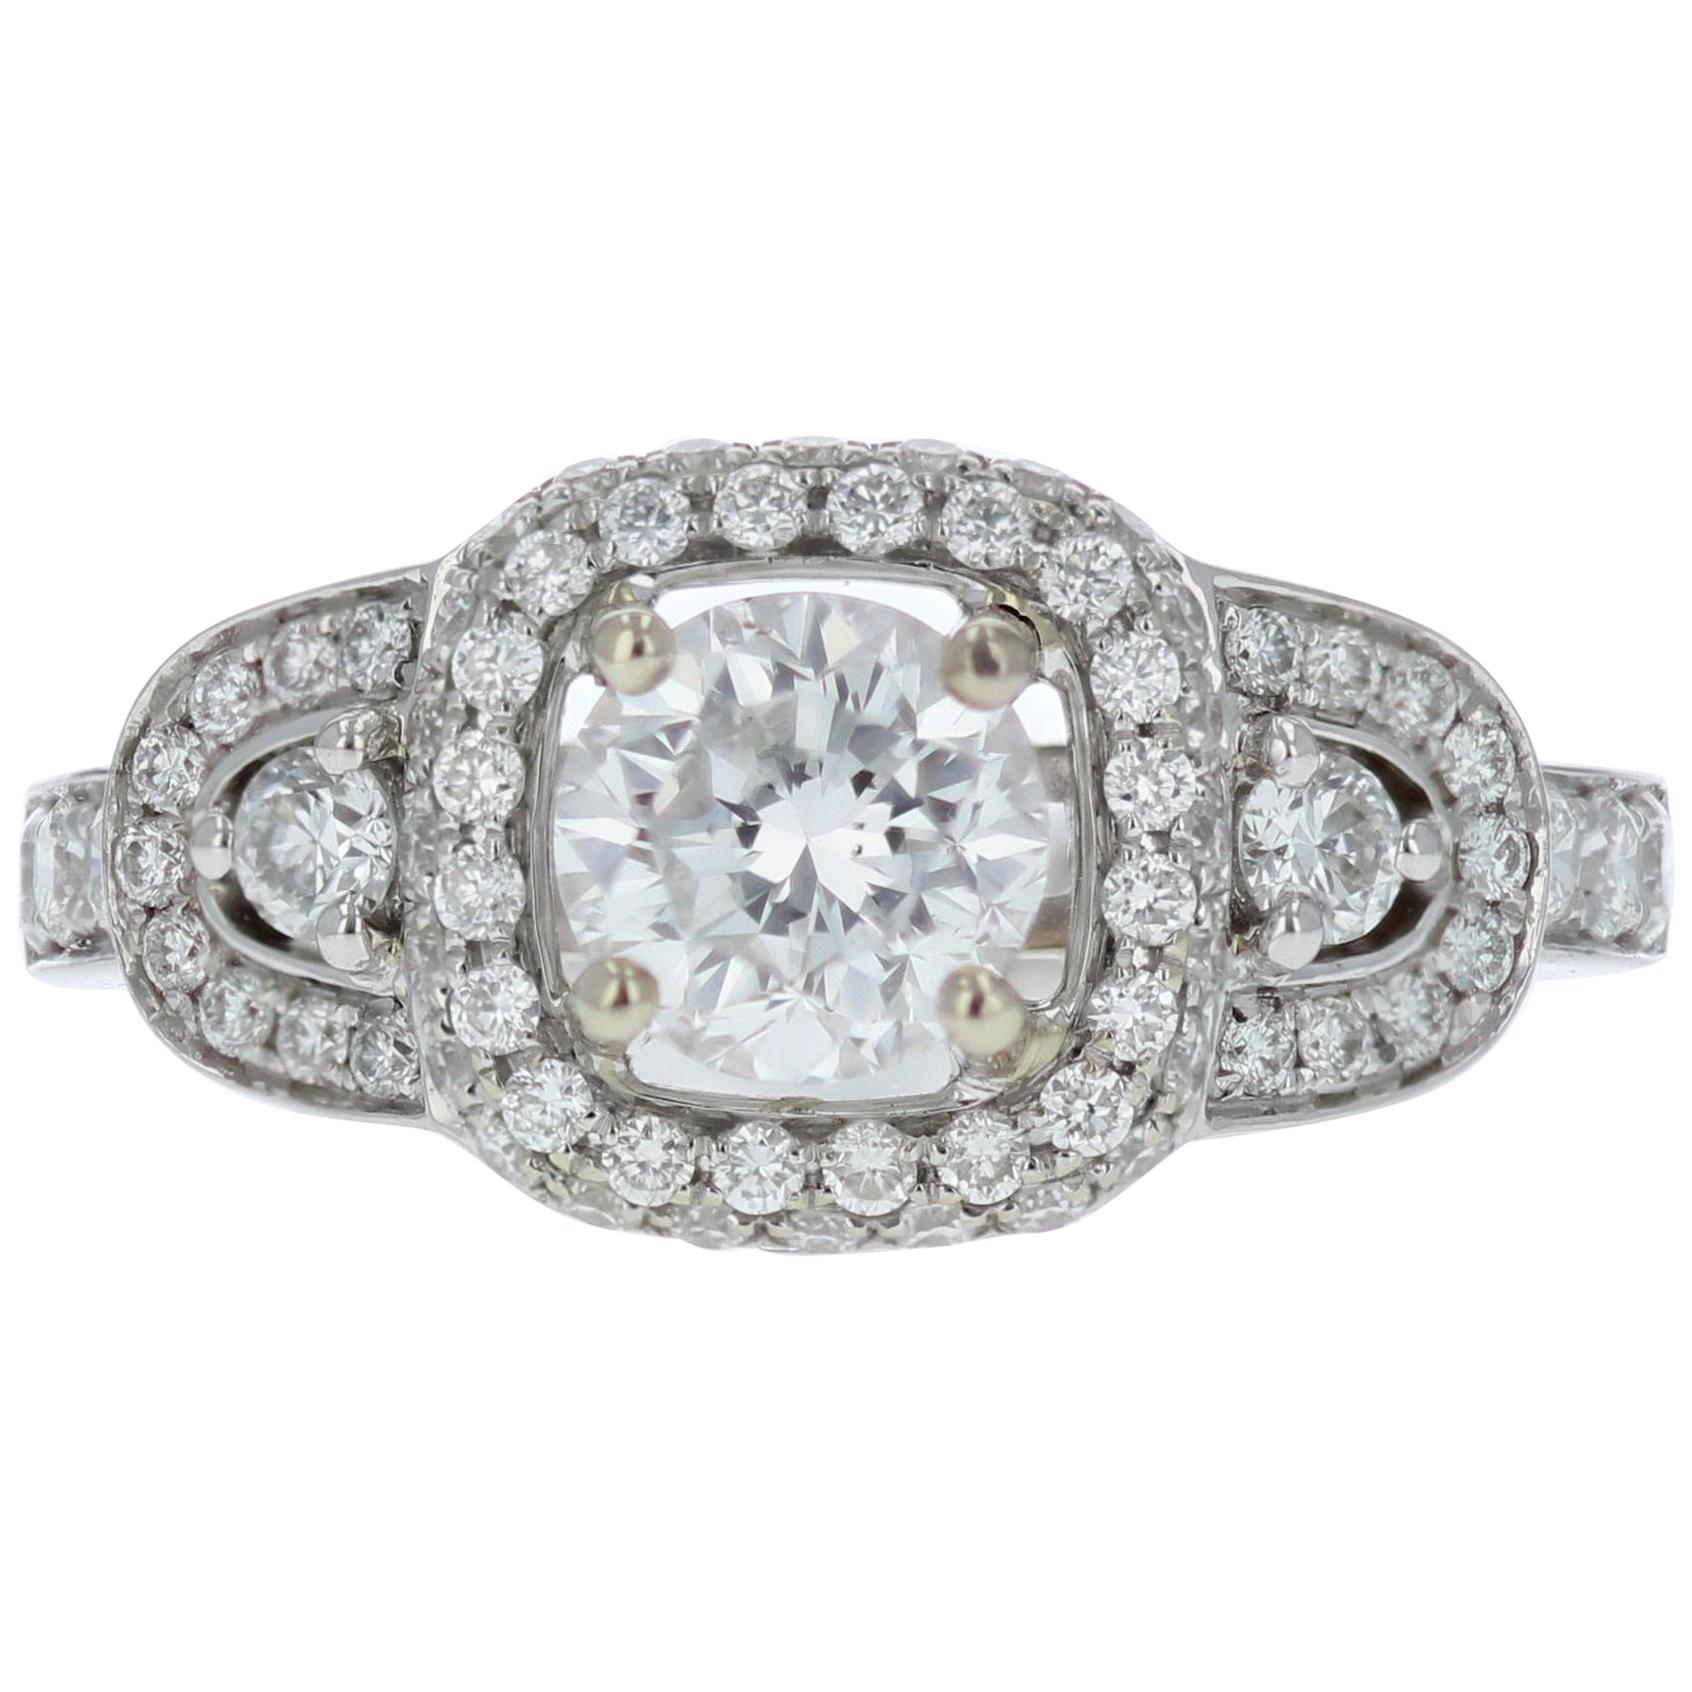 Estate Three-Stone Diamond Engagement Ring with Diamond Halos